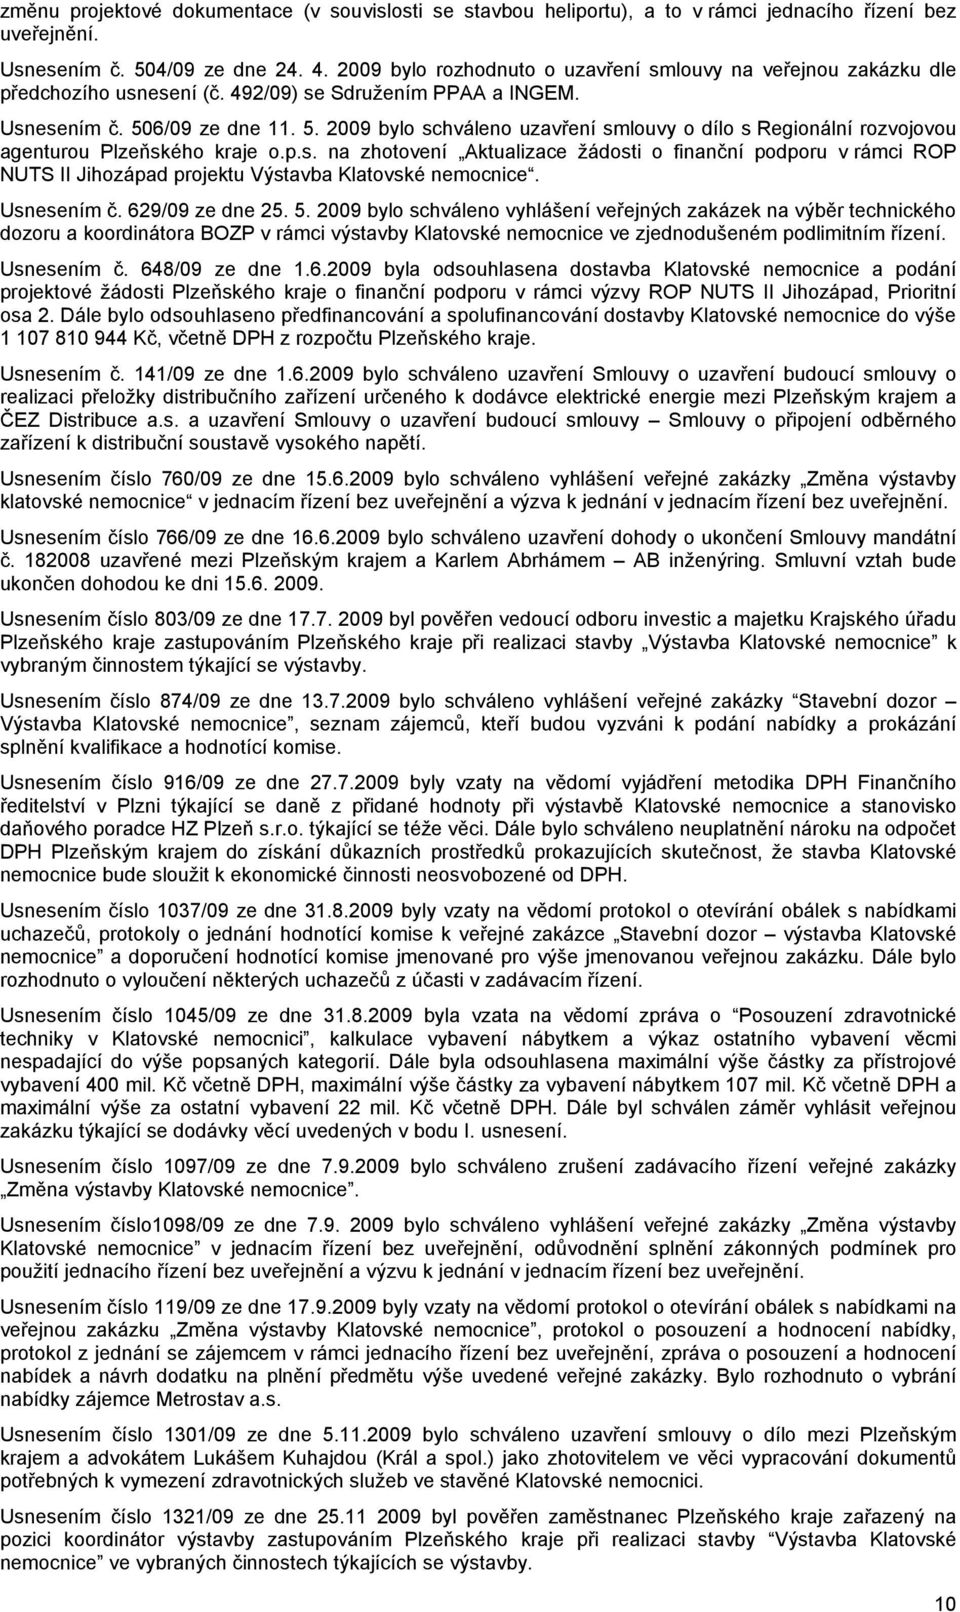 6/09 ze dne 11. 5. 2009 bylo schváleno uzavření smlouvy o dílo s Regionální rozvojovou agenturou Plzeňského kraje o.p.s. na zhotovení Aktualizace žádosti o finanční podporu v rámci ROP NUTS II Jihozápad projektu Výstavba Klatovské nemocnice.